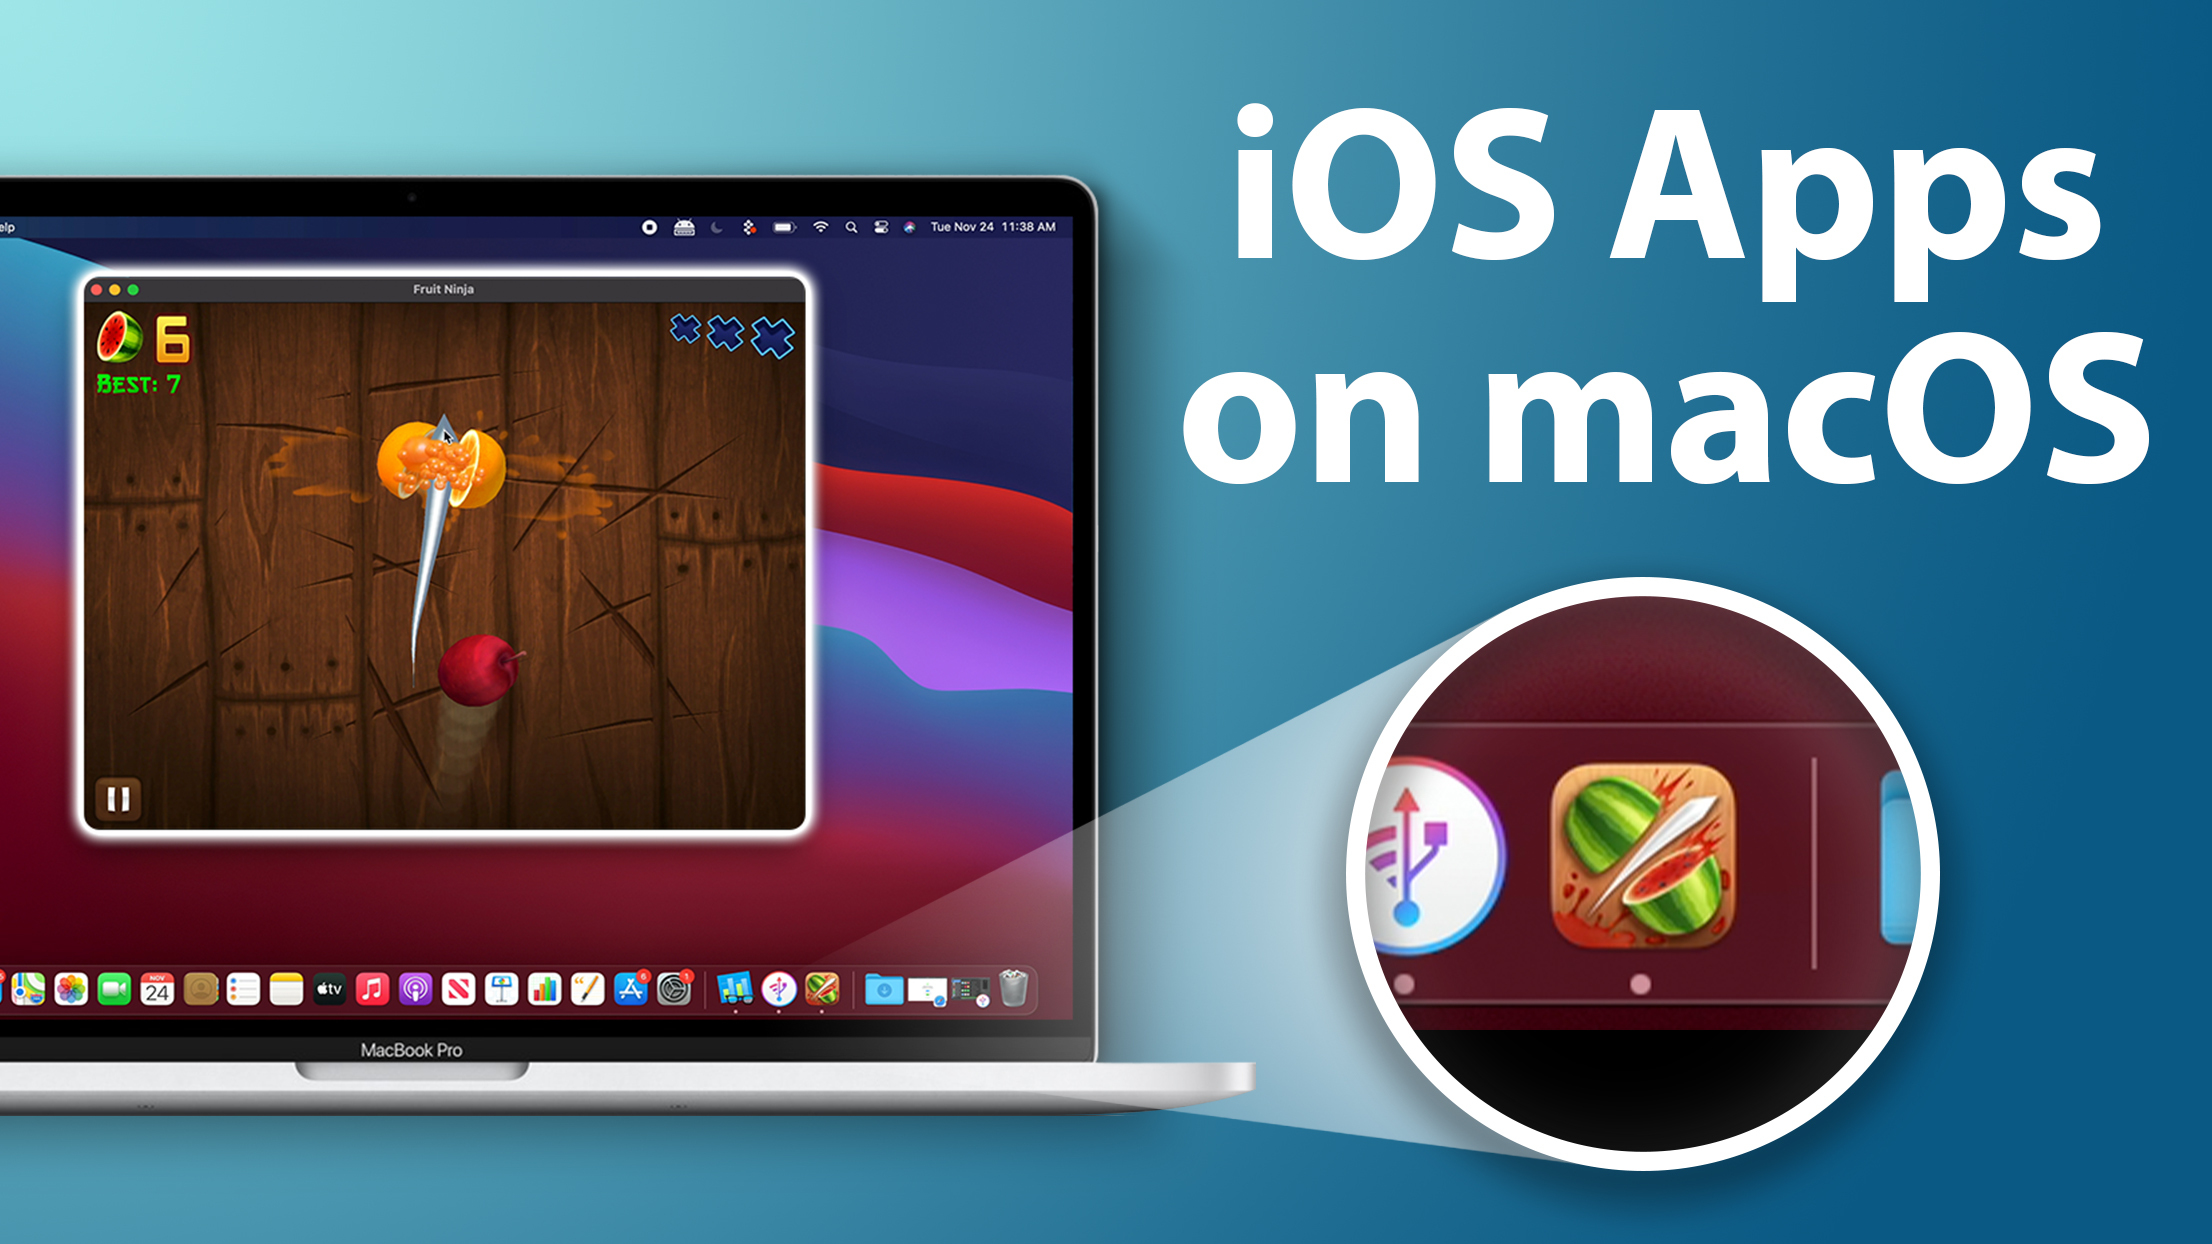 apps in macbook pro